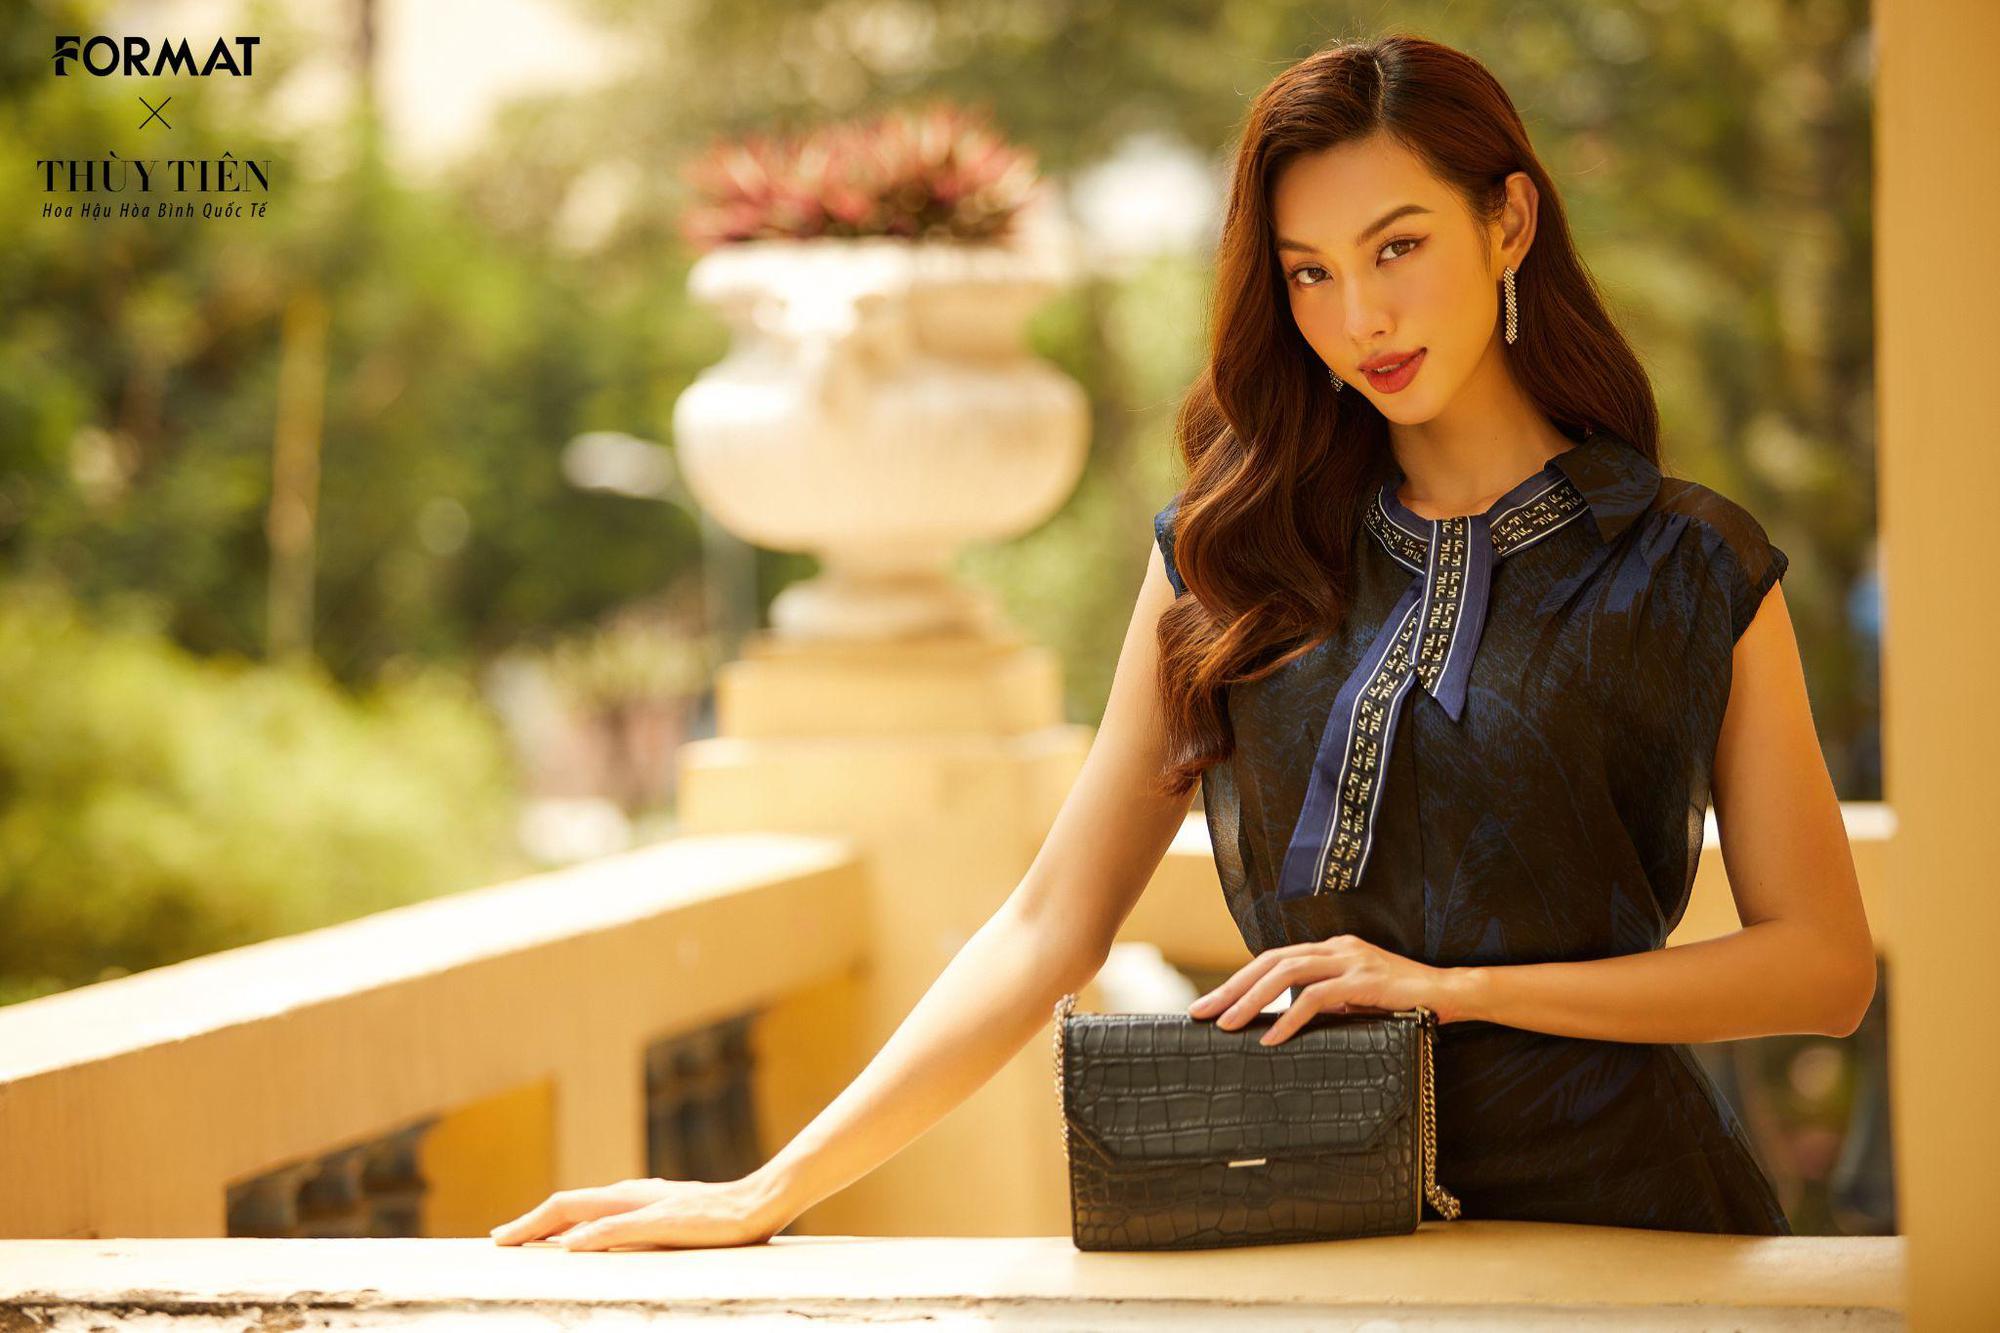 Hoa hậu Thuỳ Tiên kết hợp cùng FORMAT cho ra mắt BST thời thượng chuẩn quý cô thanh lịch - Ảnh 6.